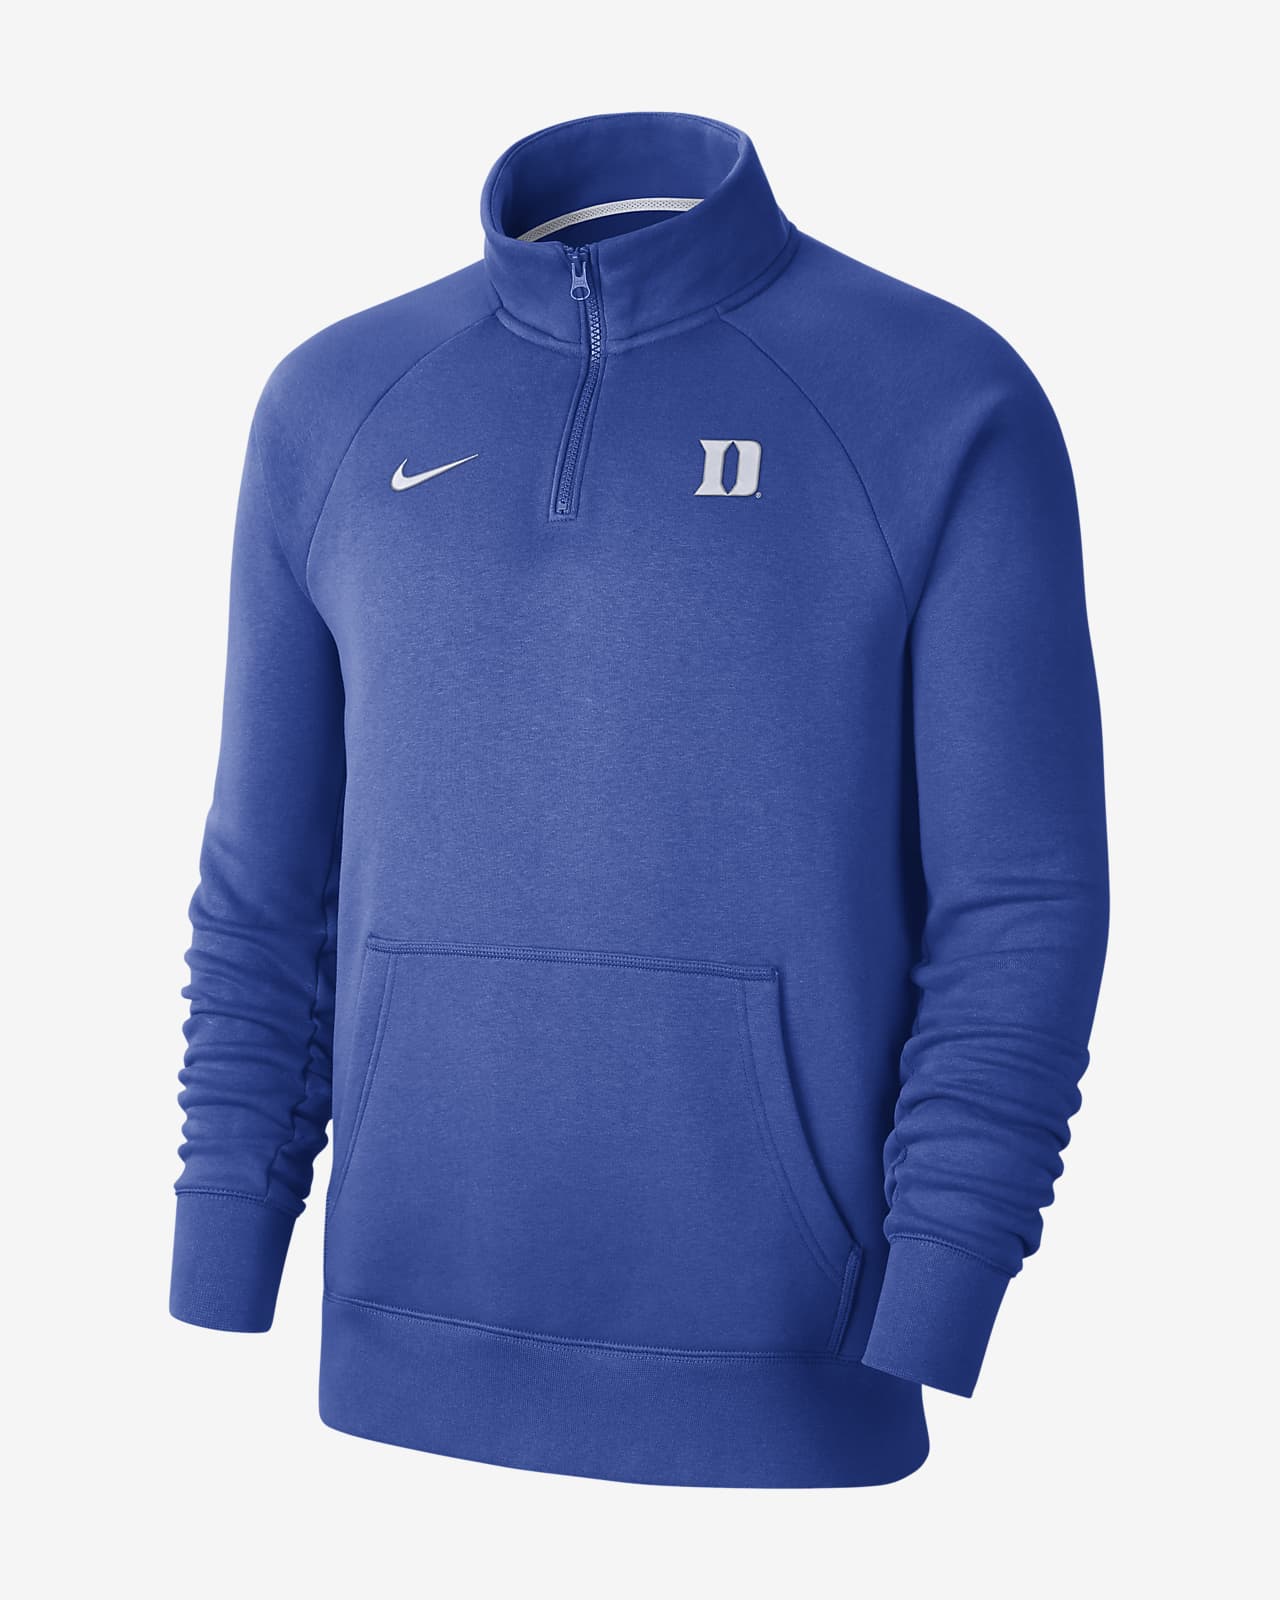 Nike College (Duke) Men's 1/4-Zip Fleece Top. Nike.com